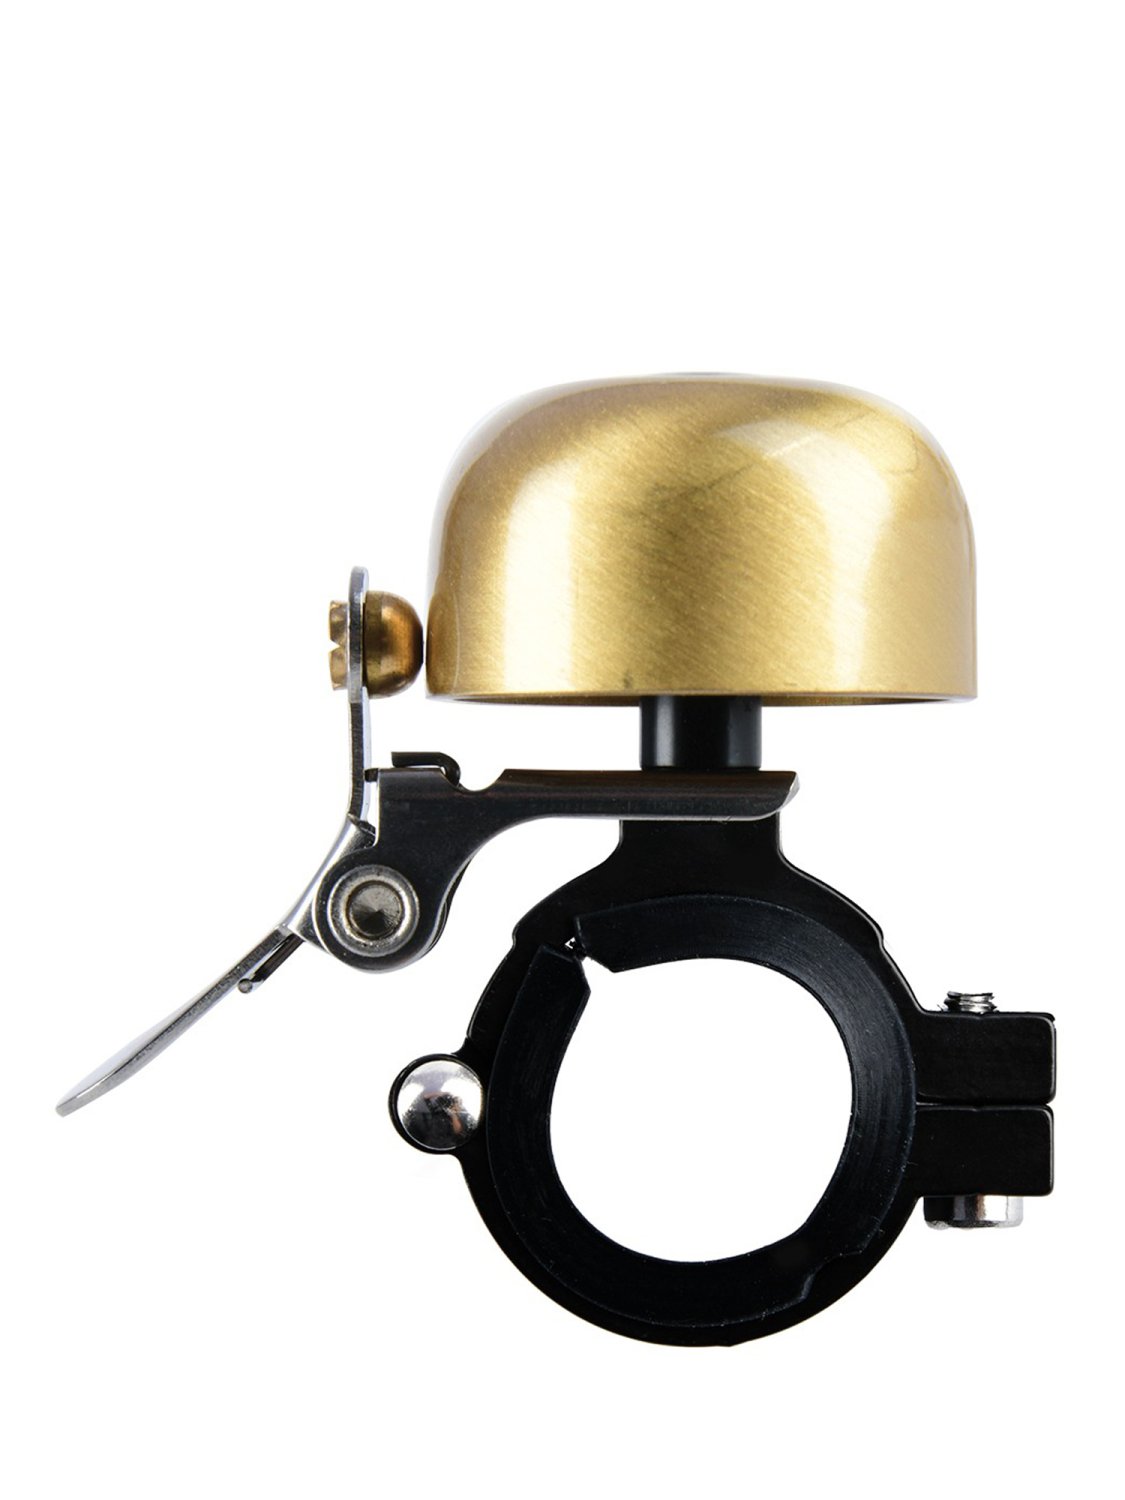 Звонок велосипедный Oxford Mini Ping Brass Bell Gold б/р, BE157G звонок велосипедный bbb bike bell noisy brass bbb 17